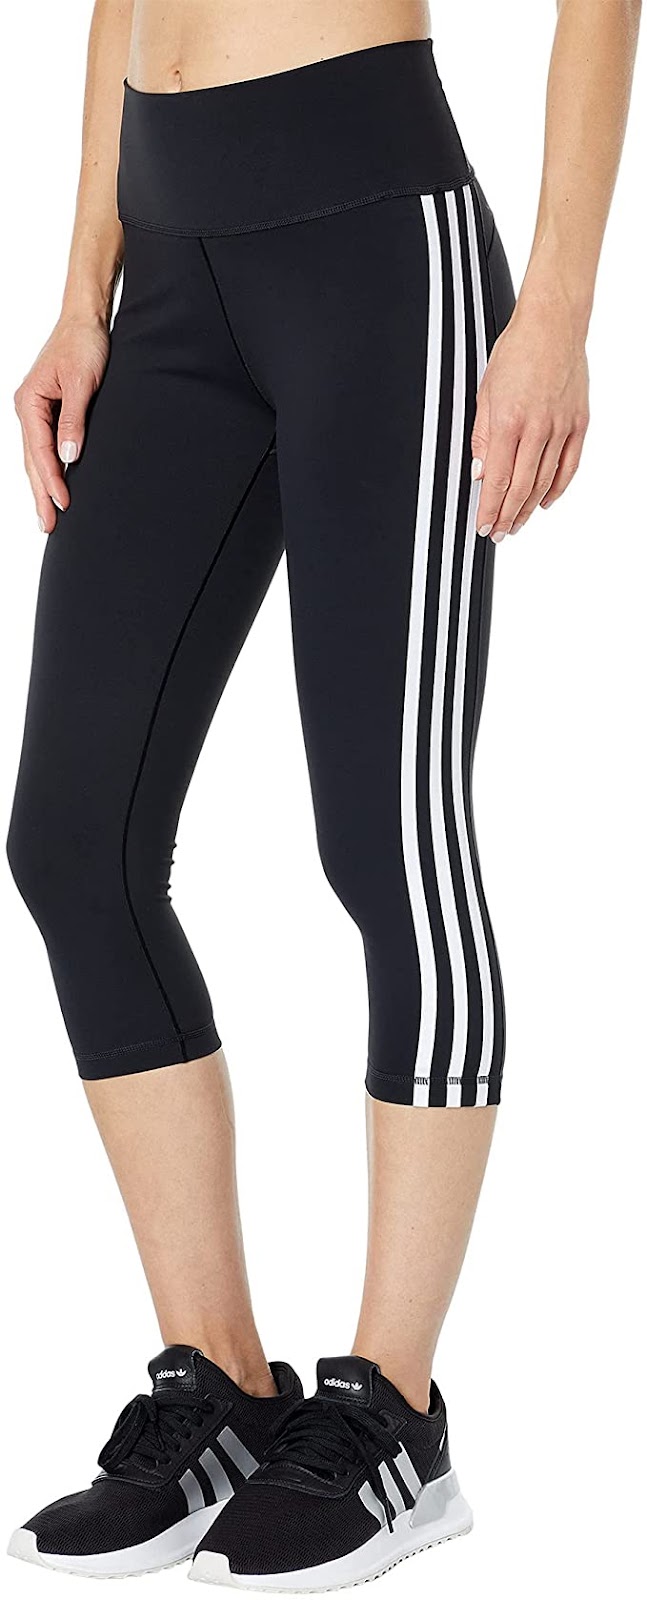 adidas Women's Believe This 2.0 3-Stripes 3/4 Tight Black/White XX-Large